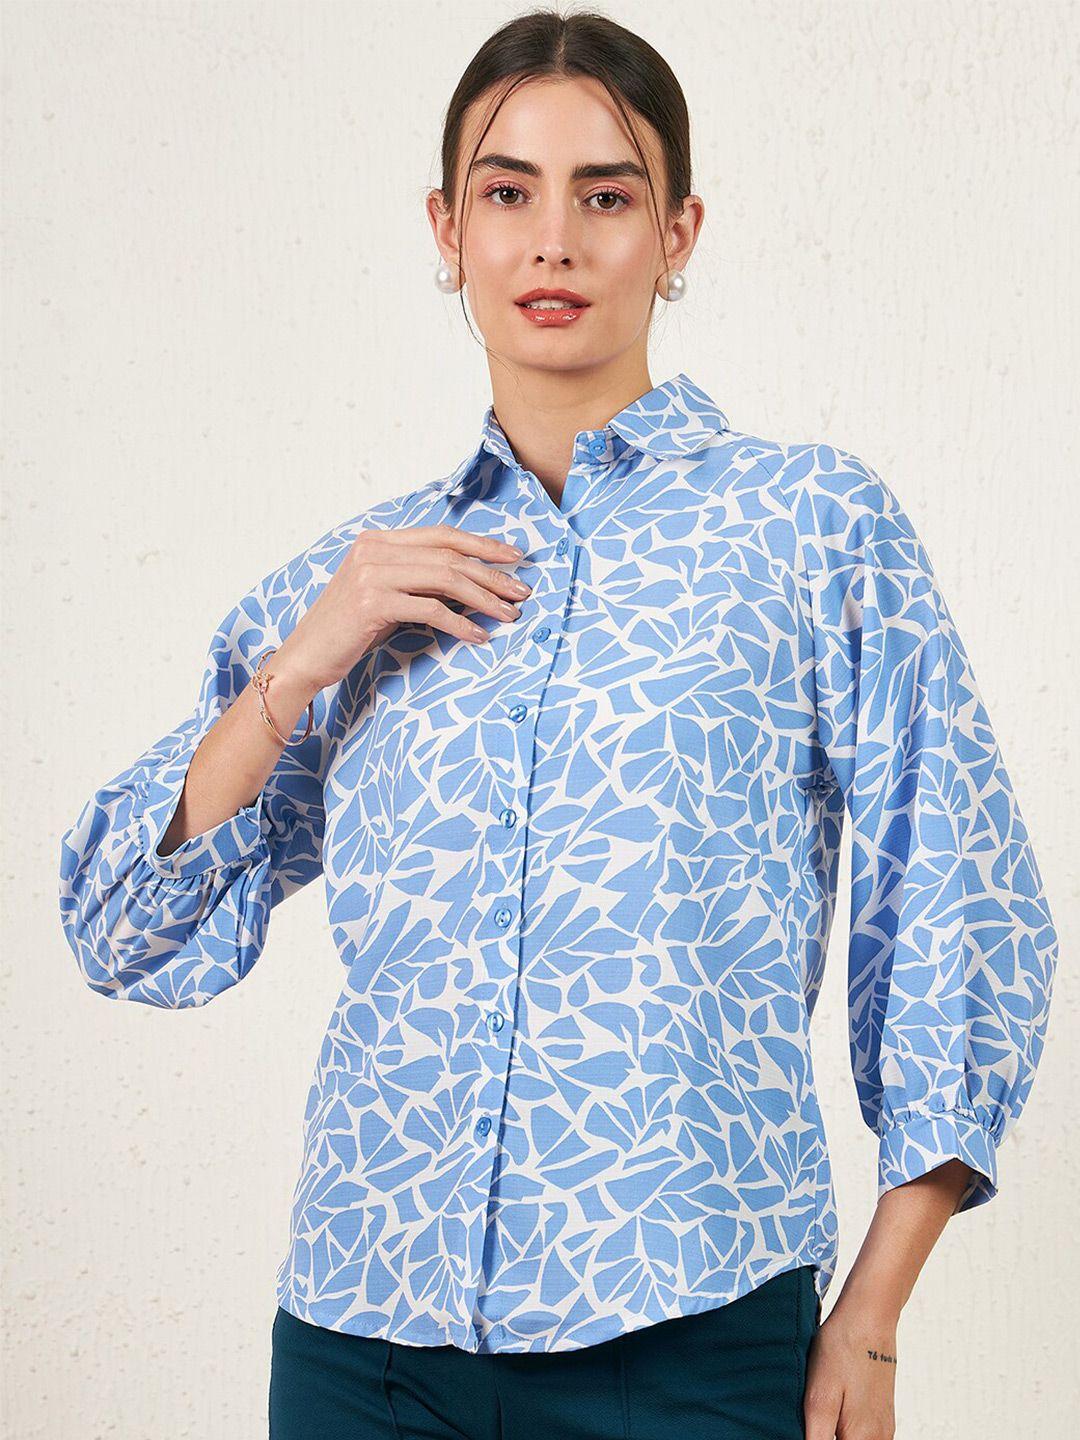 carlton london abstract printed casual shirt